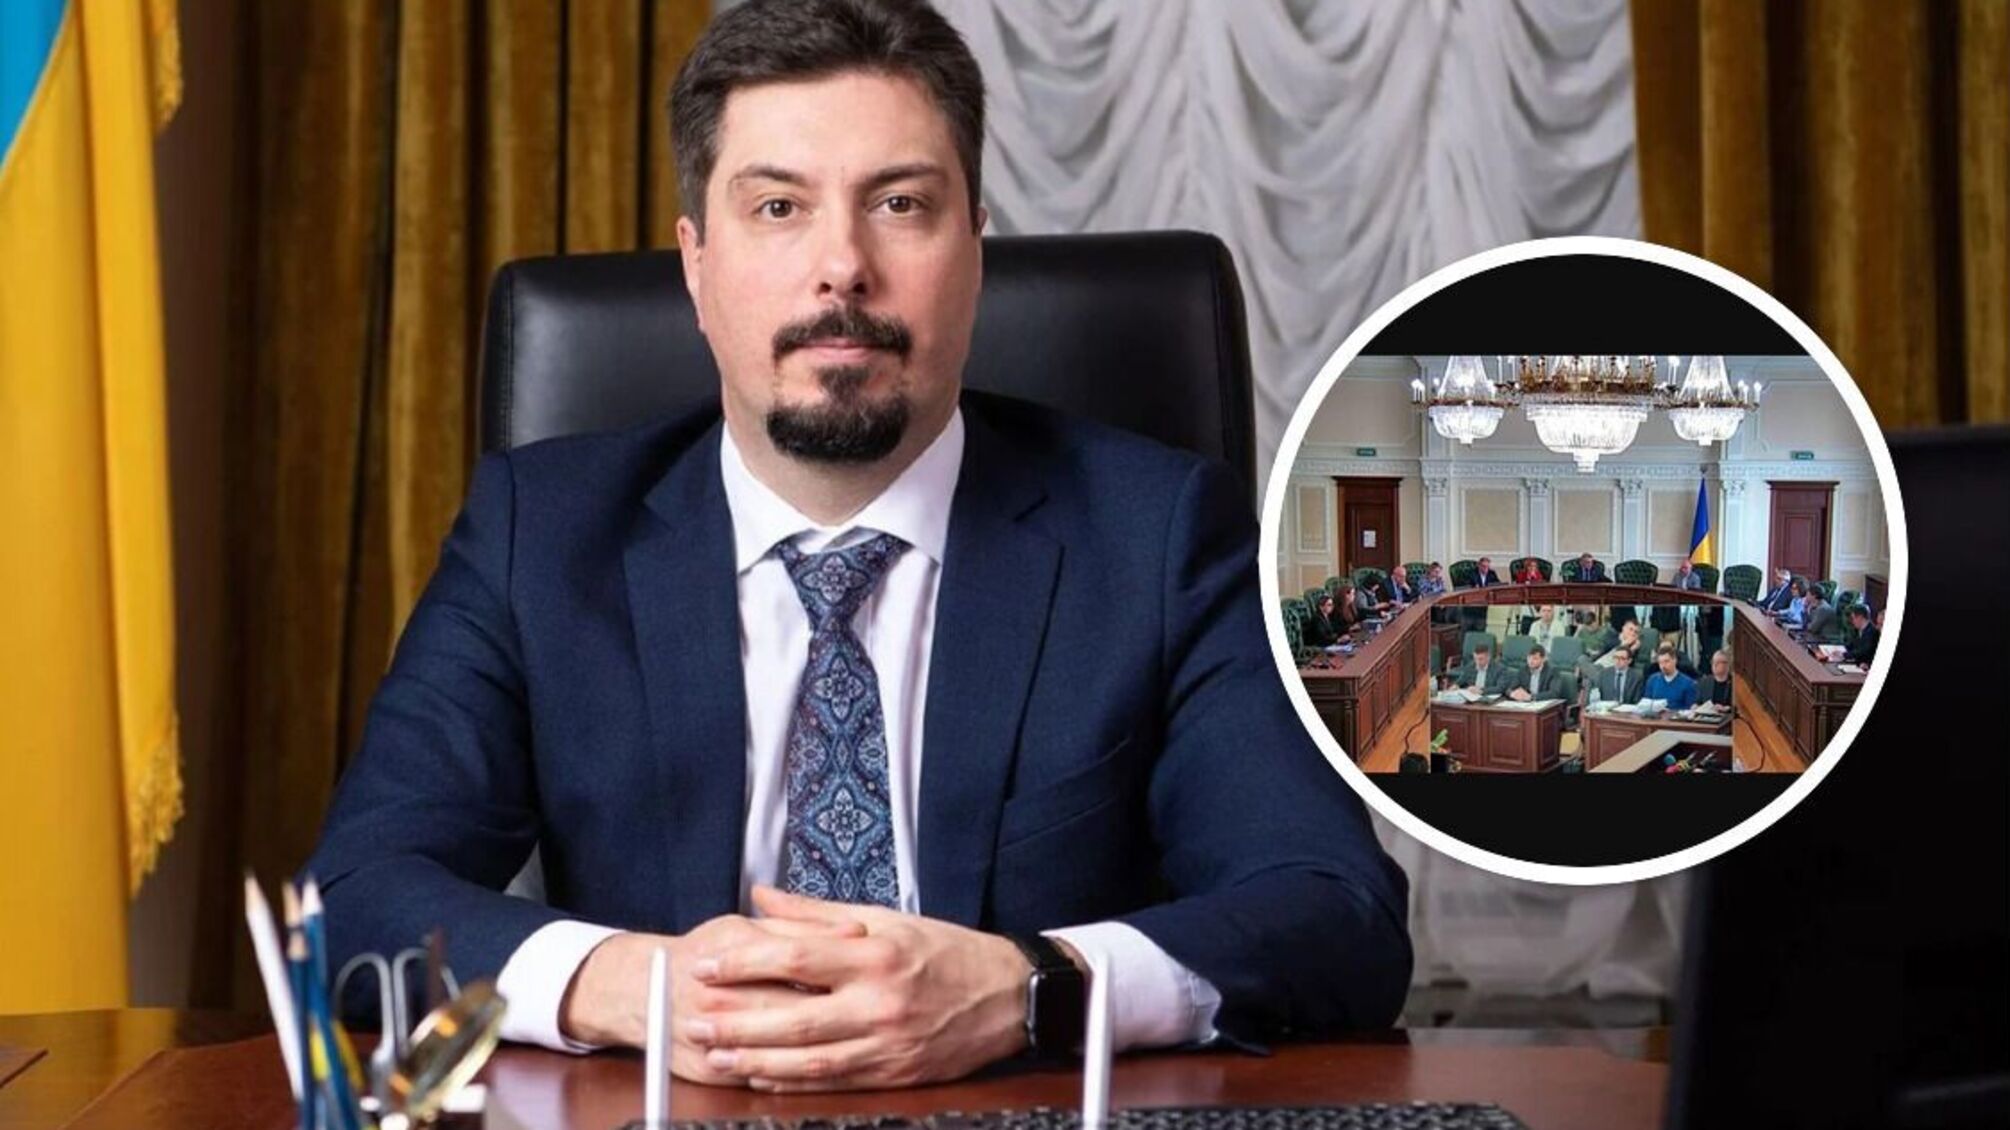 Экспредседателя Верховного суда Князева оставили под стражей: размер залога уменьшили на 10 млн